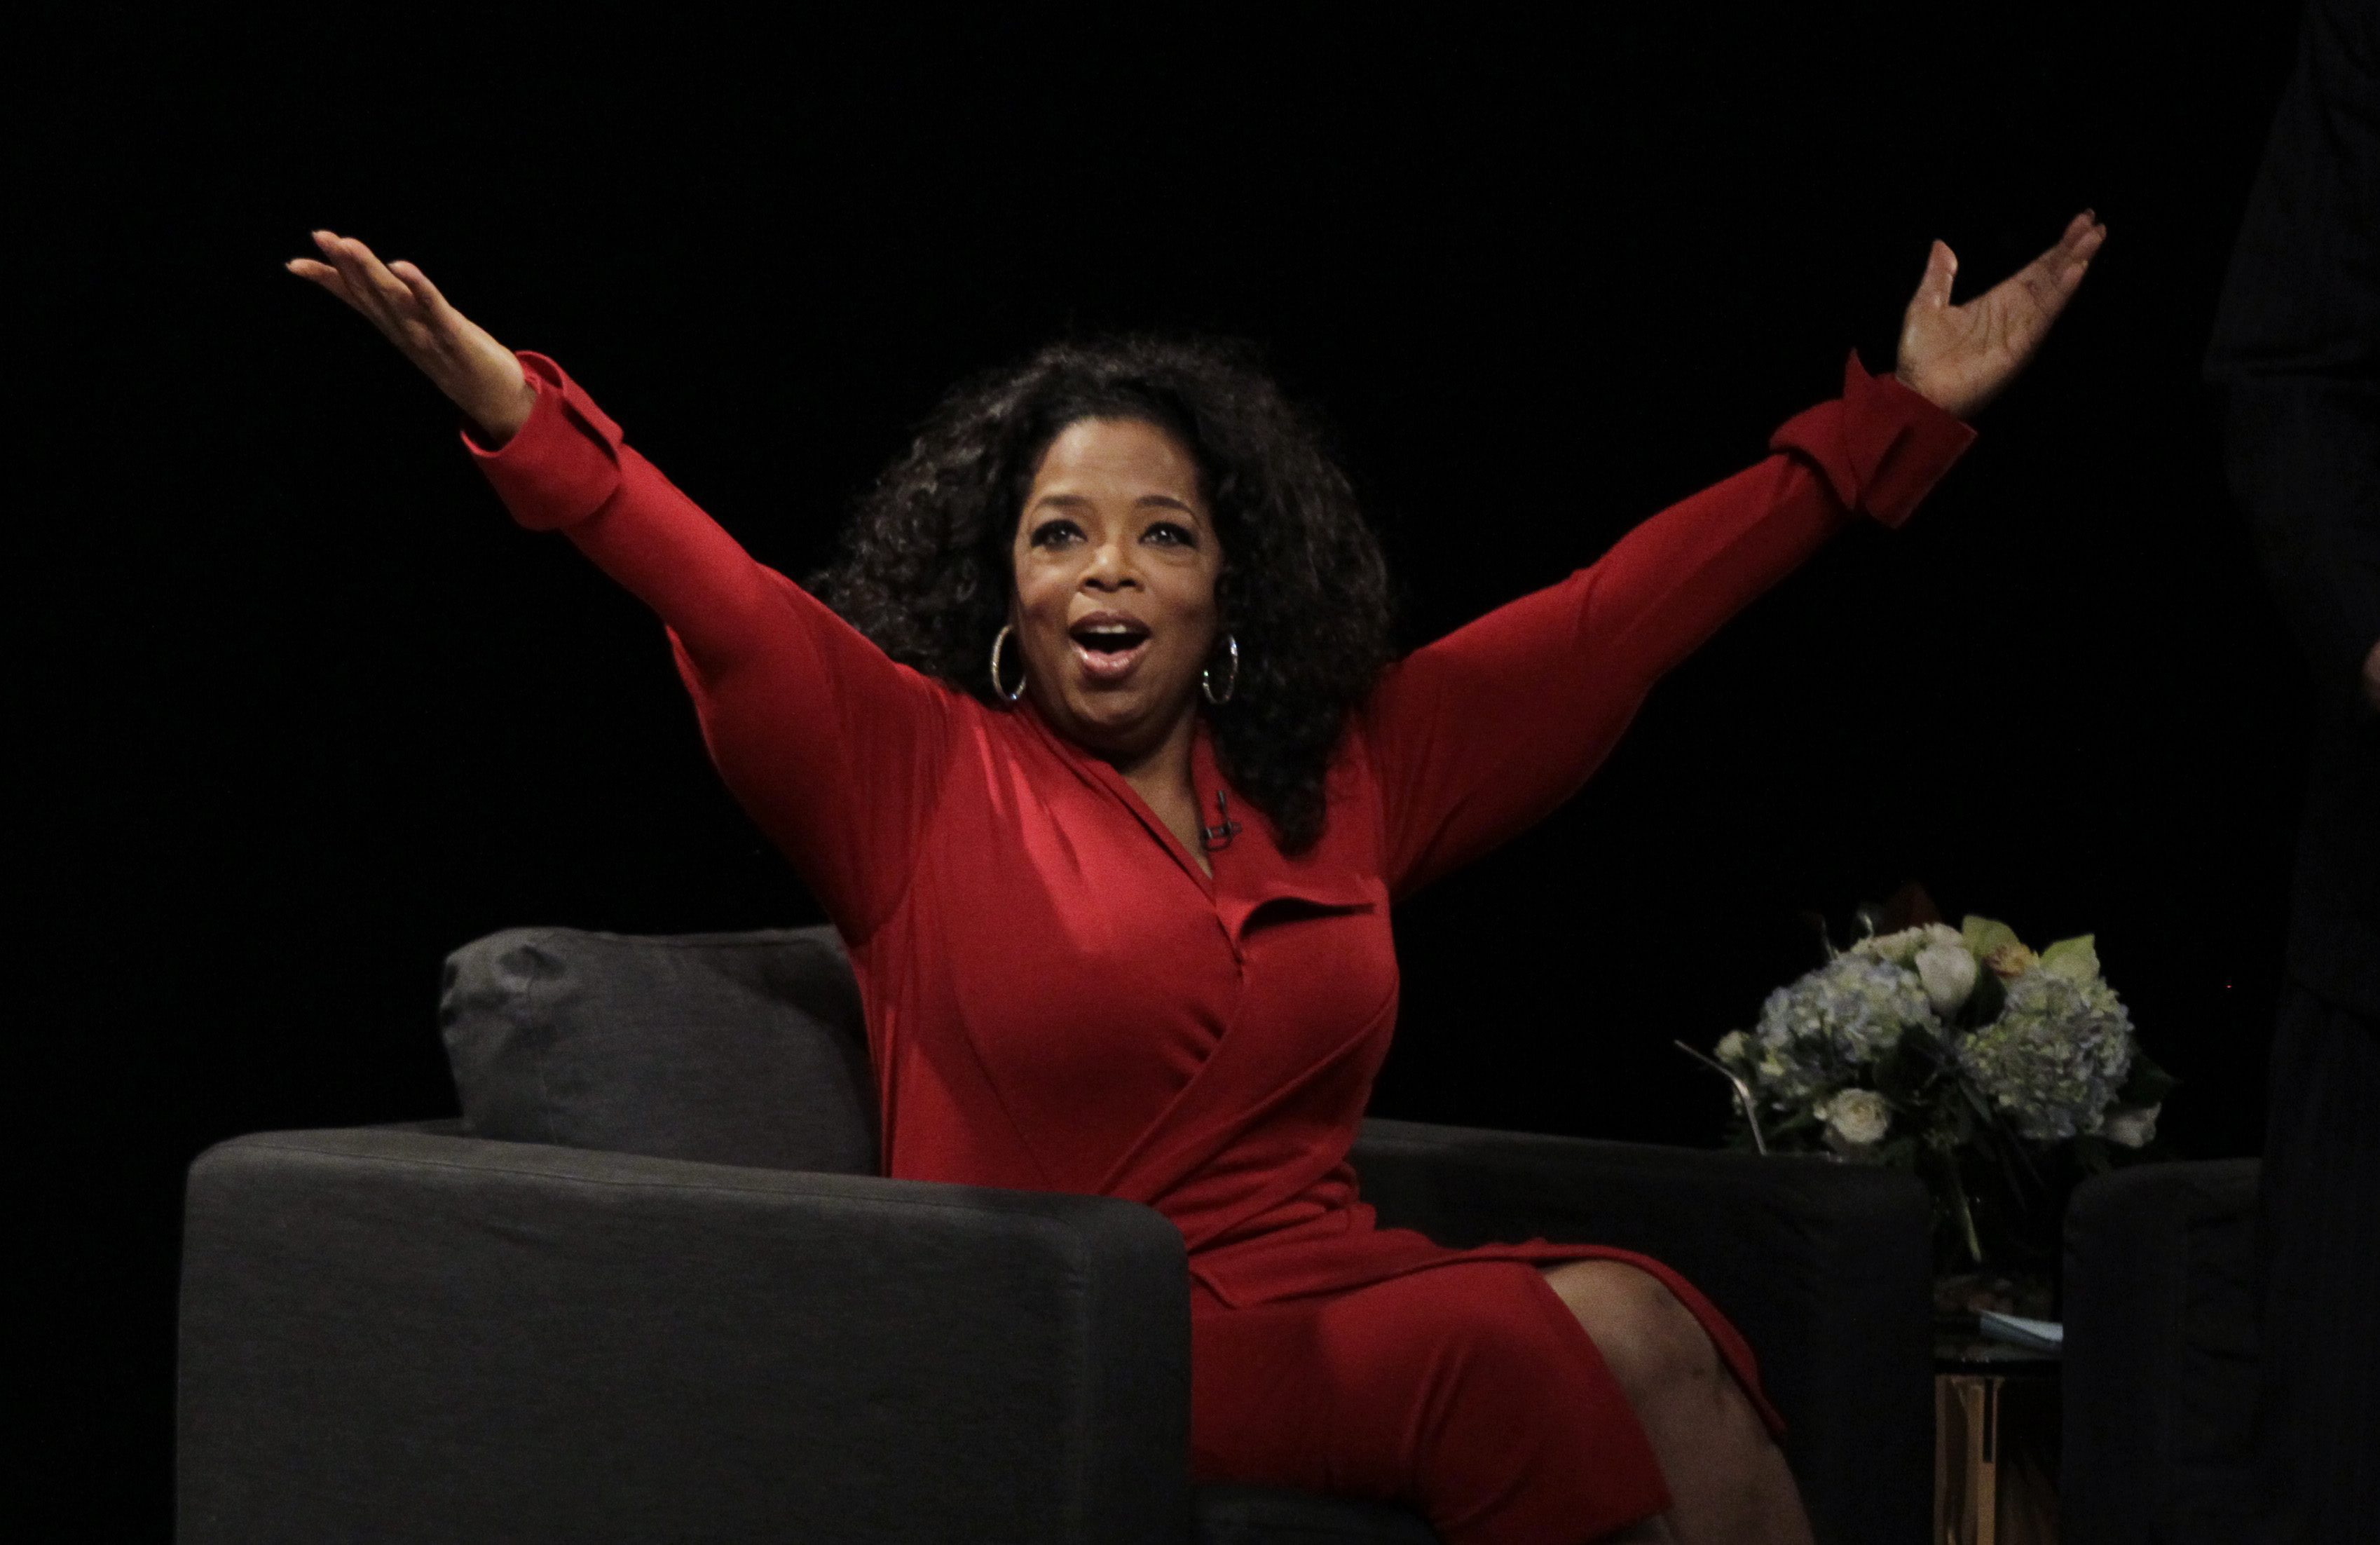 Oprah gail winfrey mesleği, nereli, hayatının özeti, kısaca özgeçmişi, kaç ...